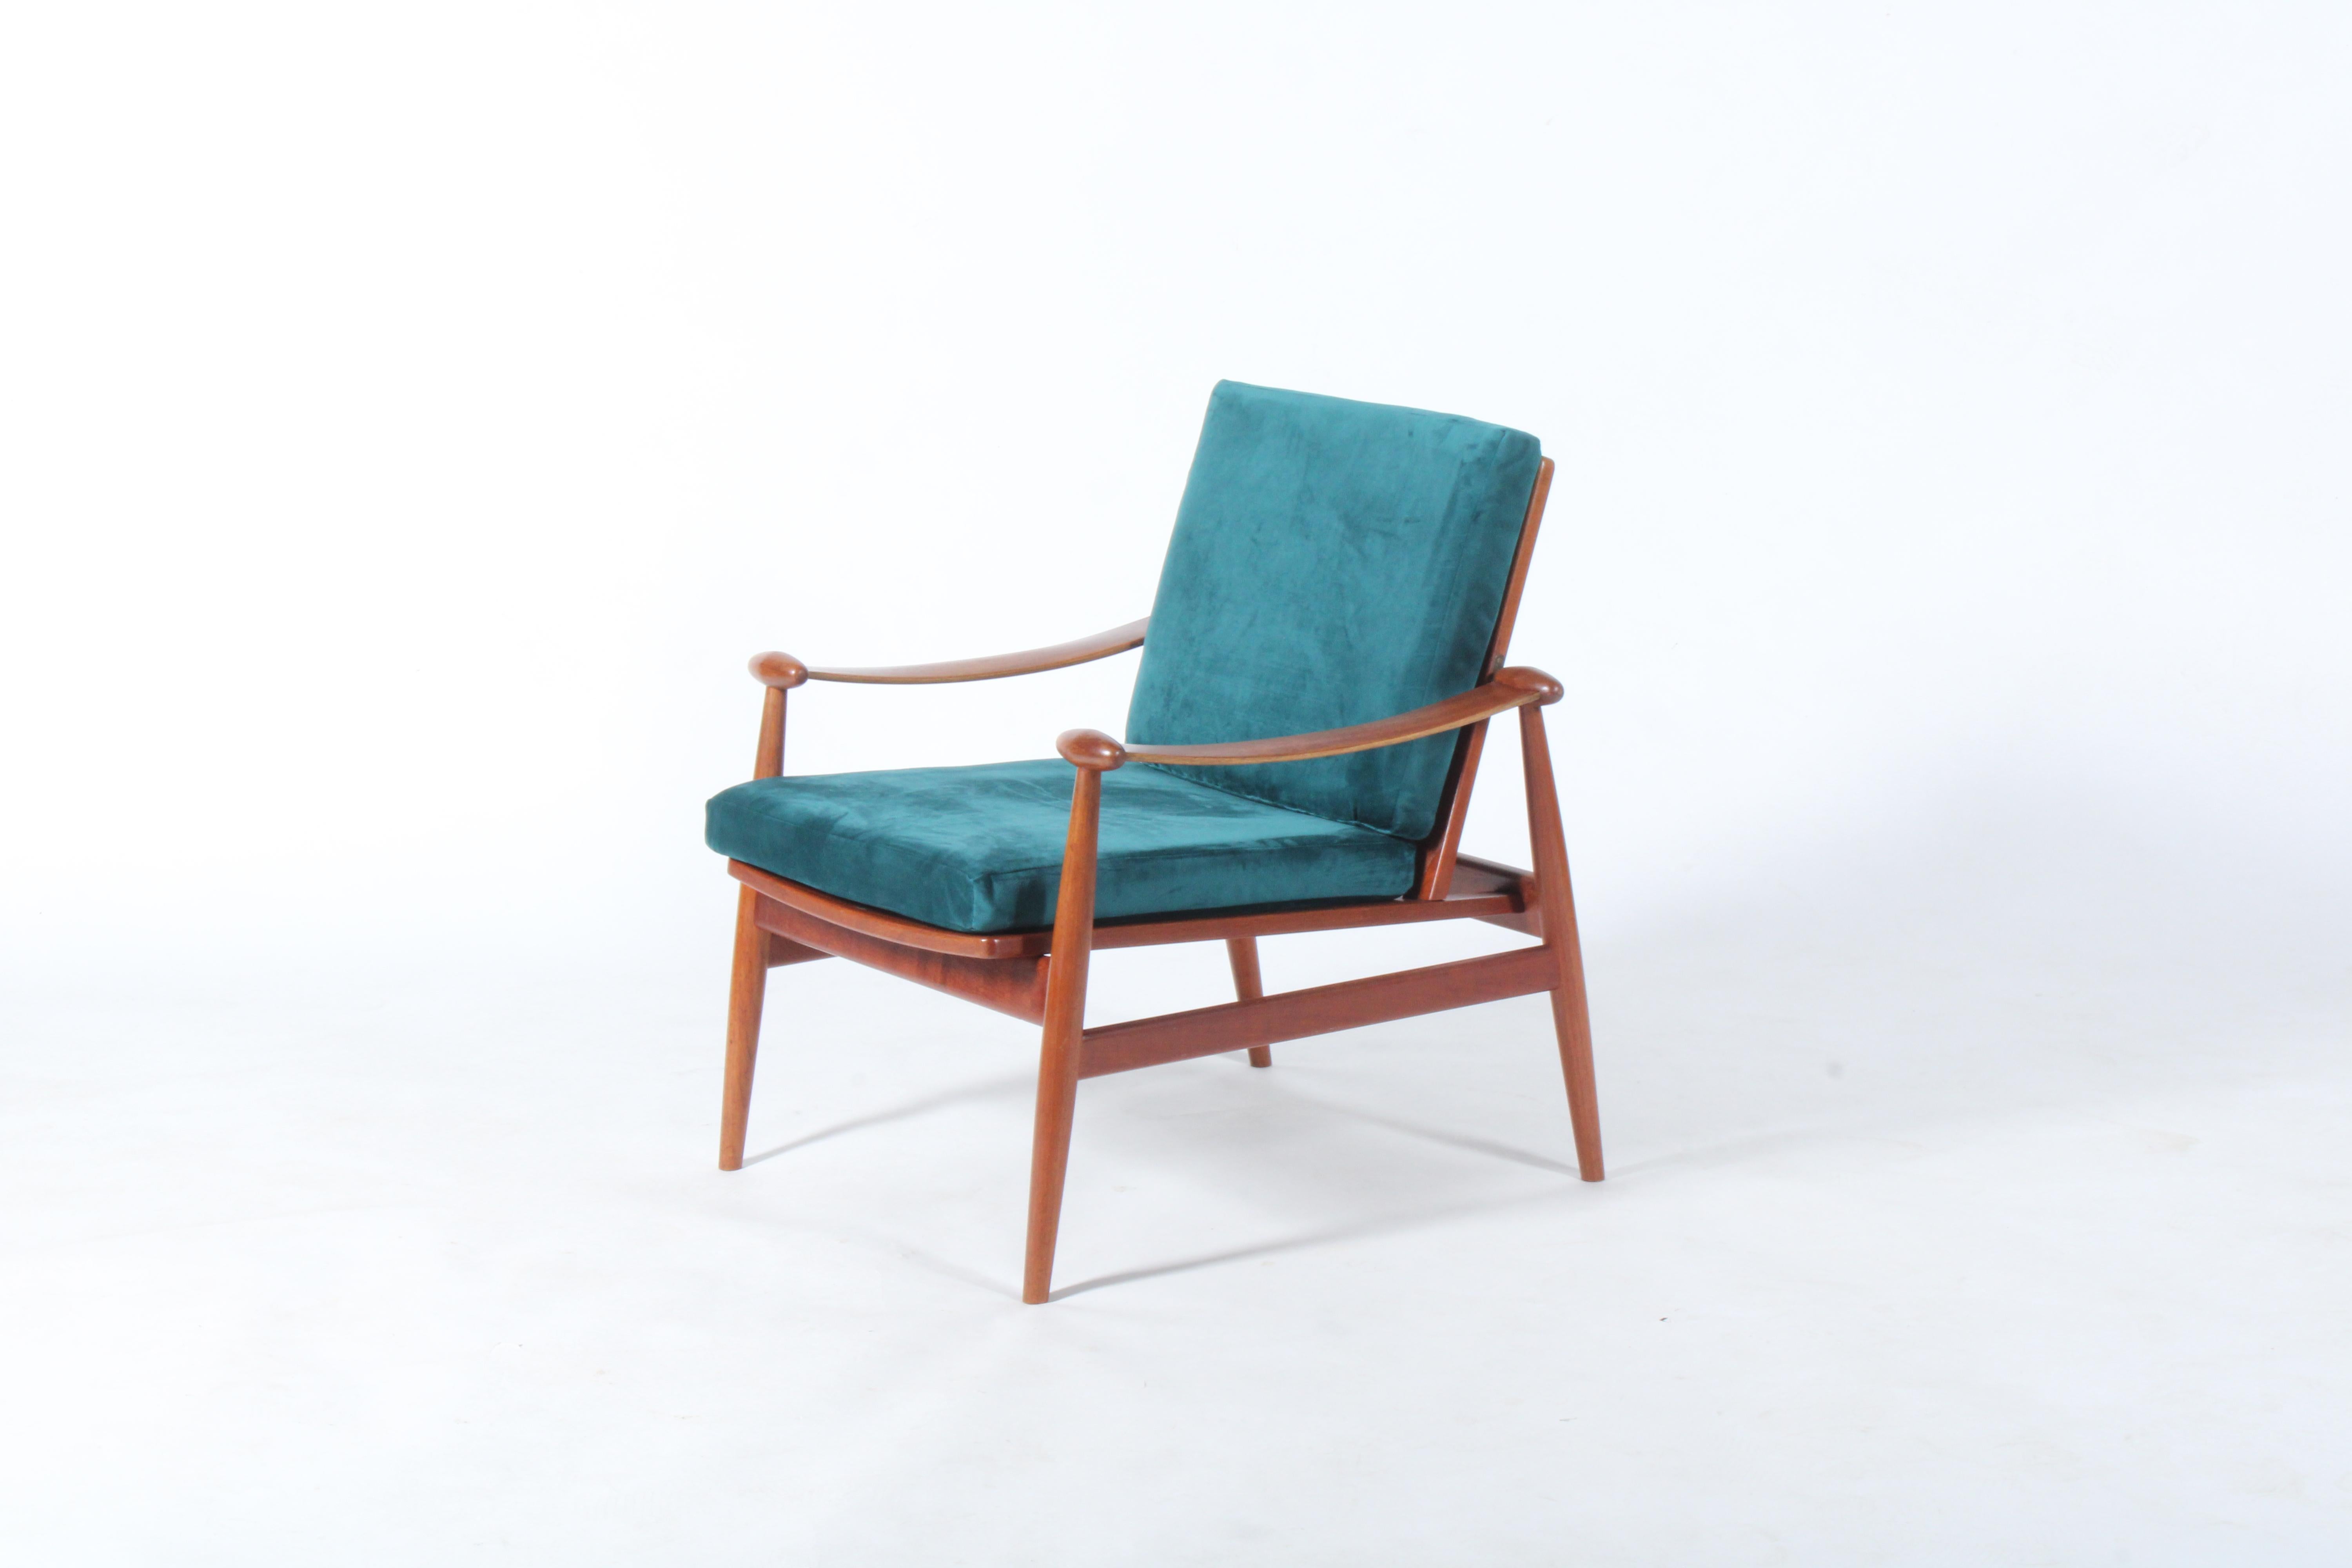 Originaler und authentischer Spade Chair aus Teakholz von dem legendären dänischen Designer Finn Juhl, hergestellt von France und Daverkosen um 1950.  Dieses Stück ist in hervorragendem Zustand, nachdem es professionell restauriert und mit neuen